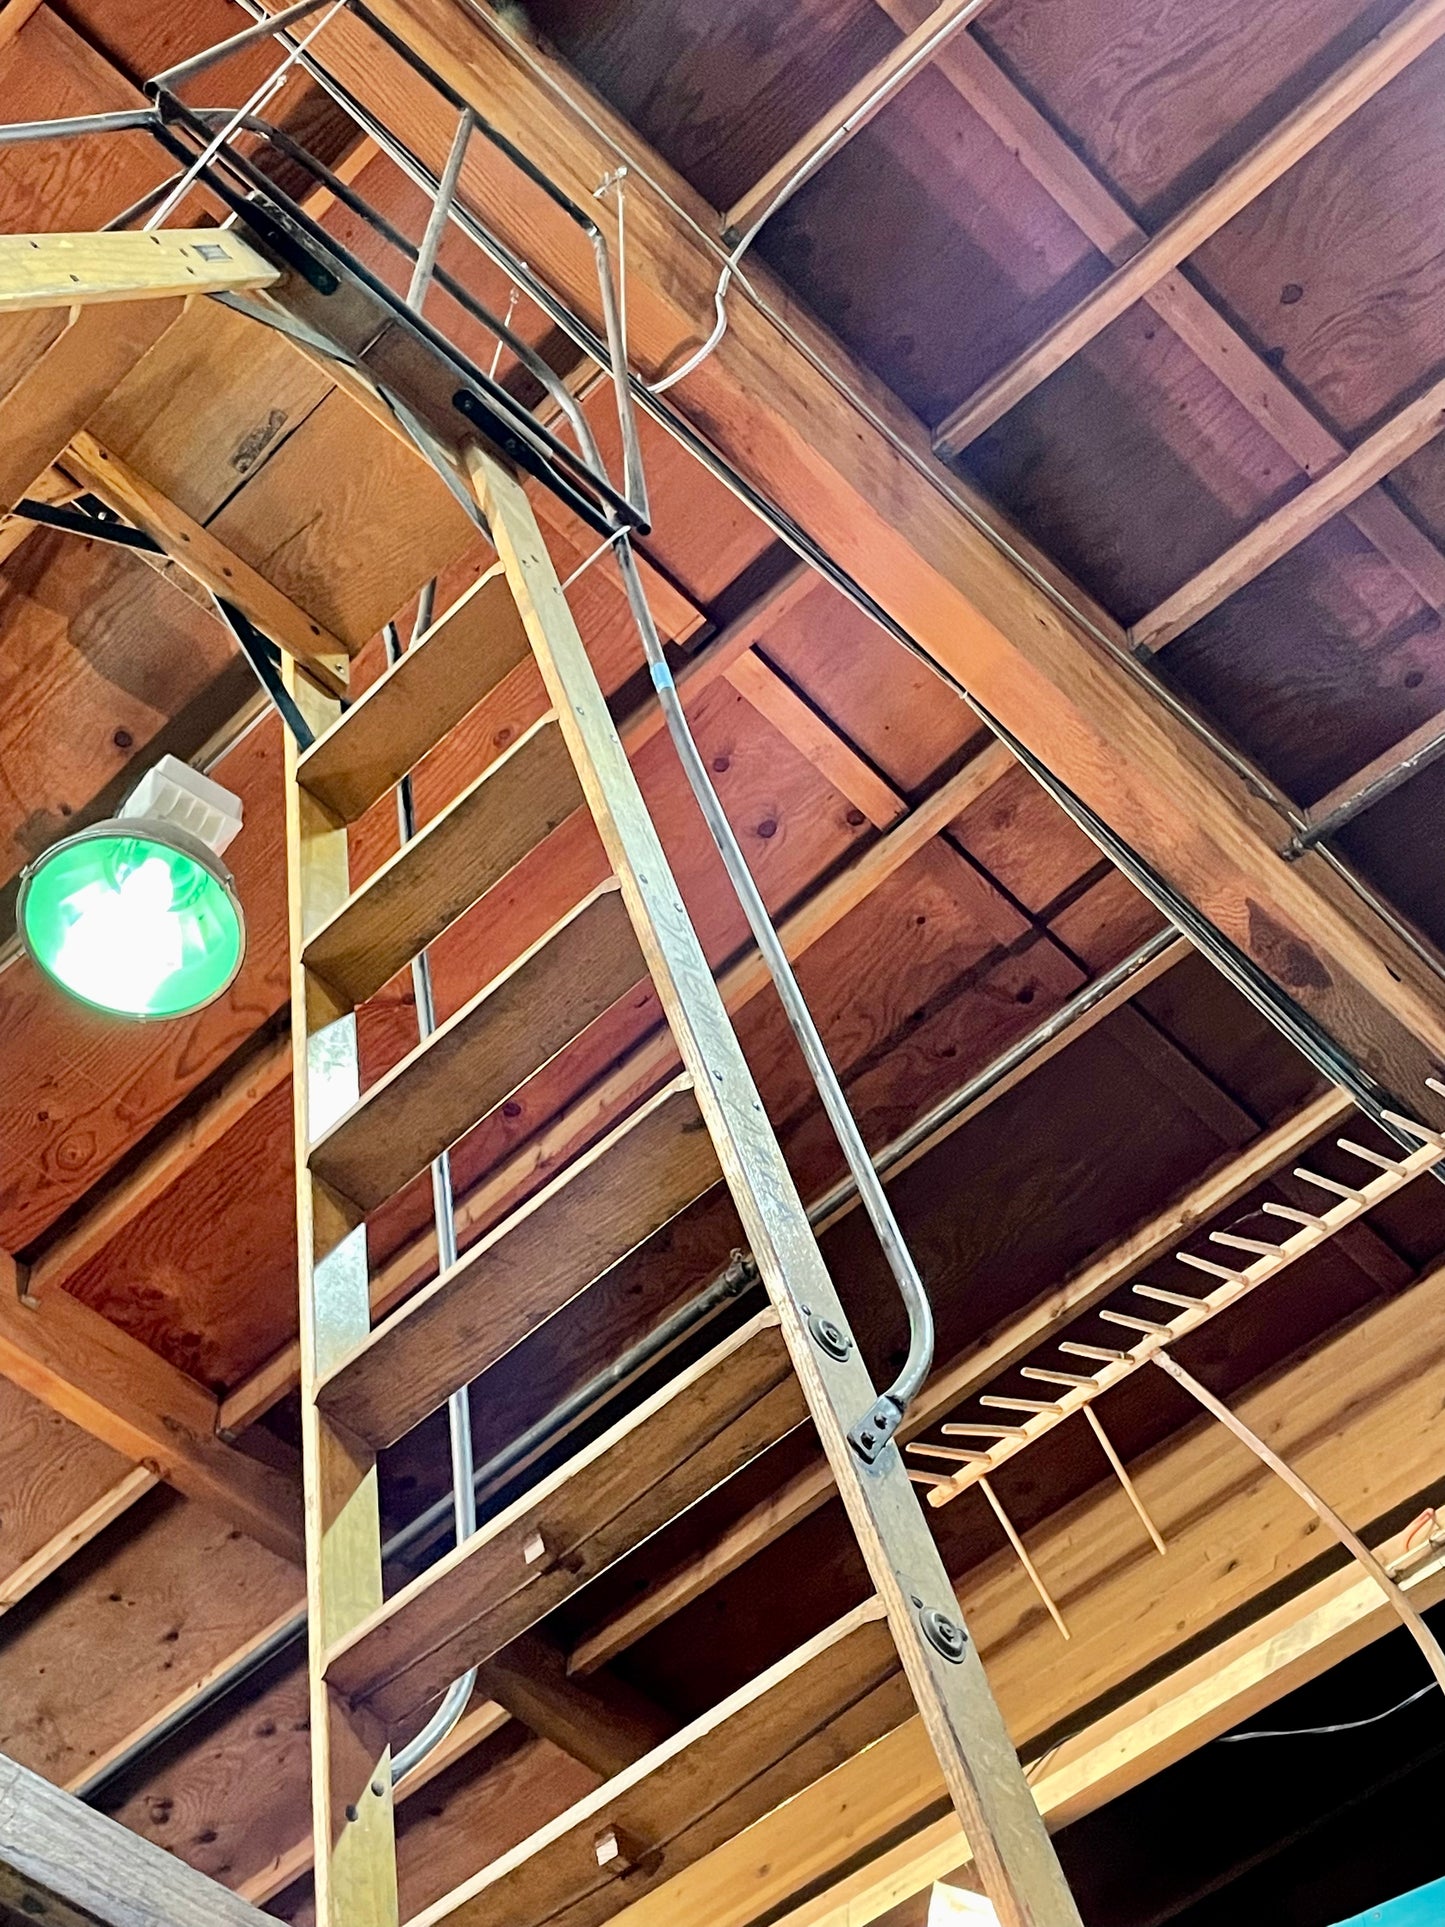 Movie Studio Ladder